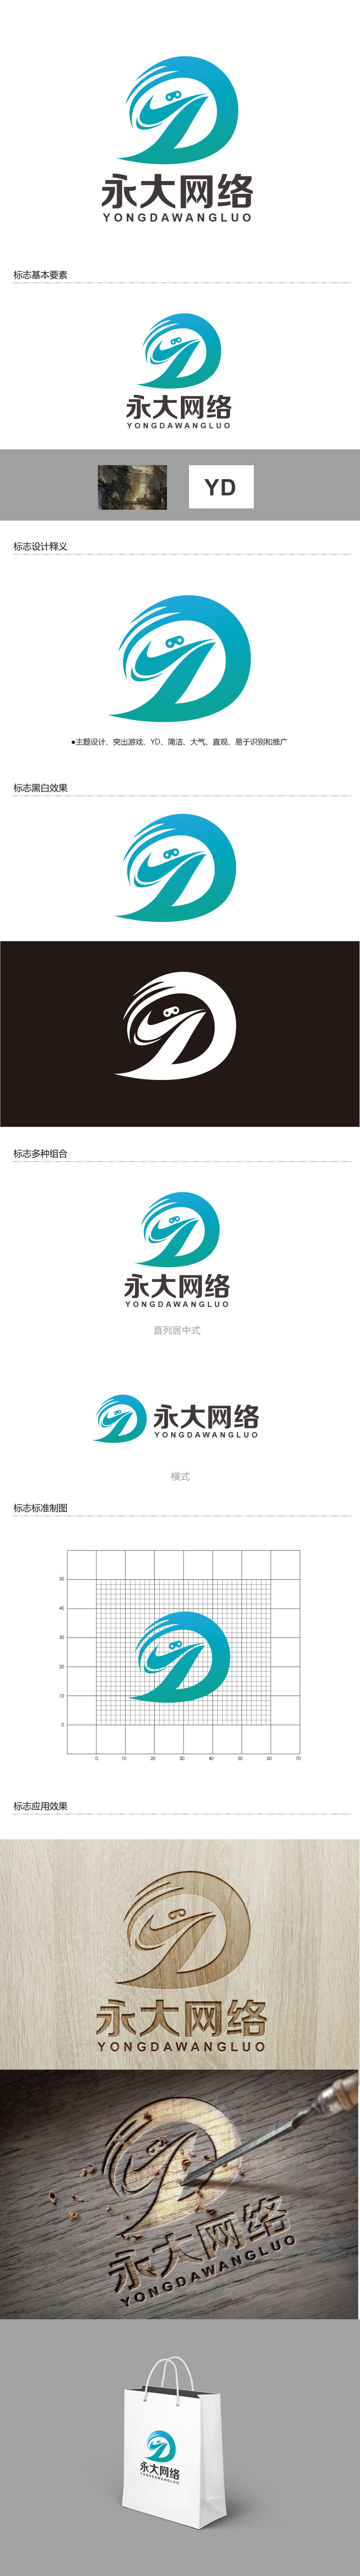 朱红娟的永大网络logo设计